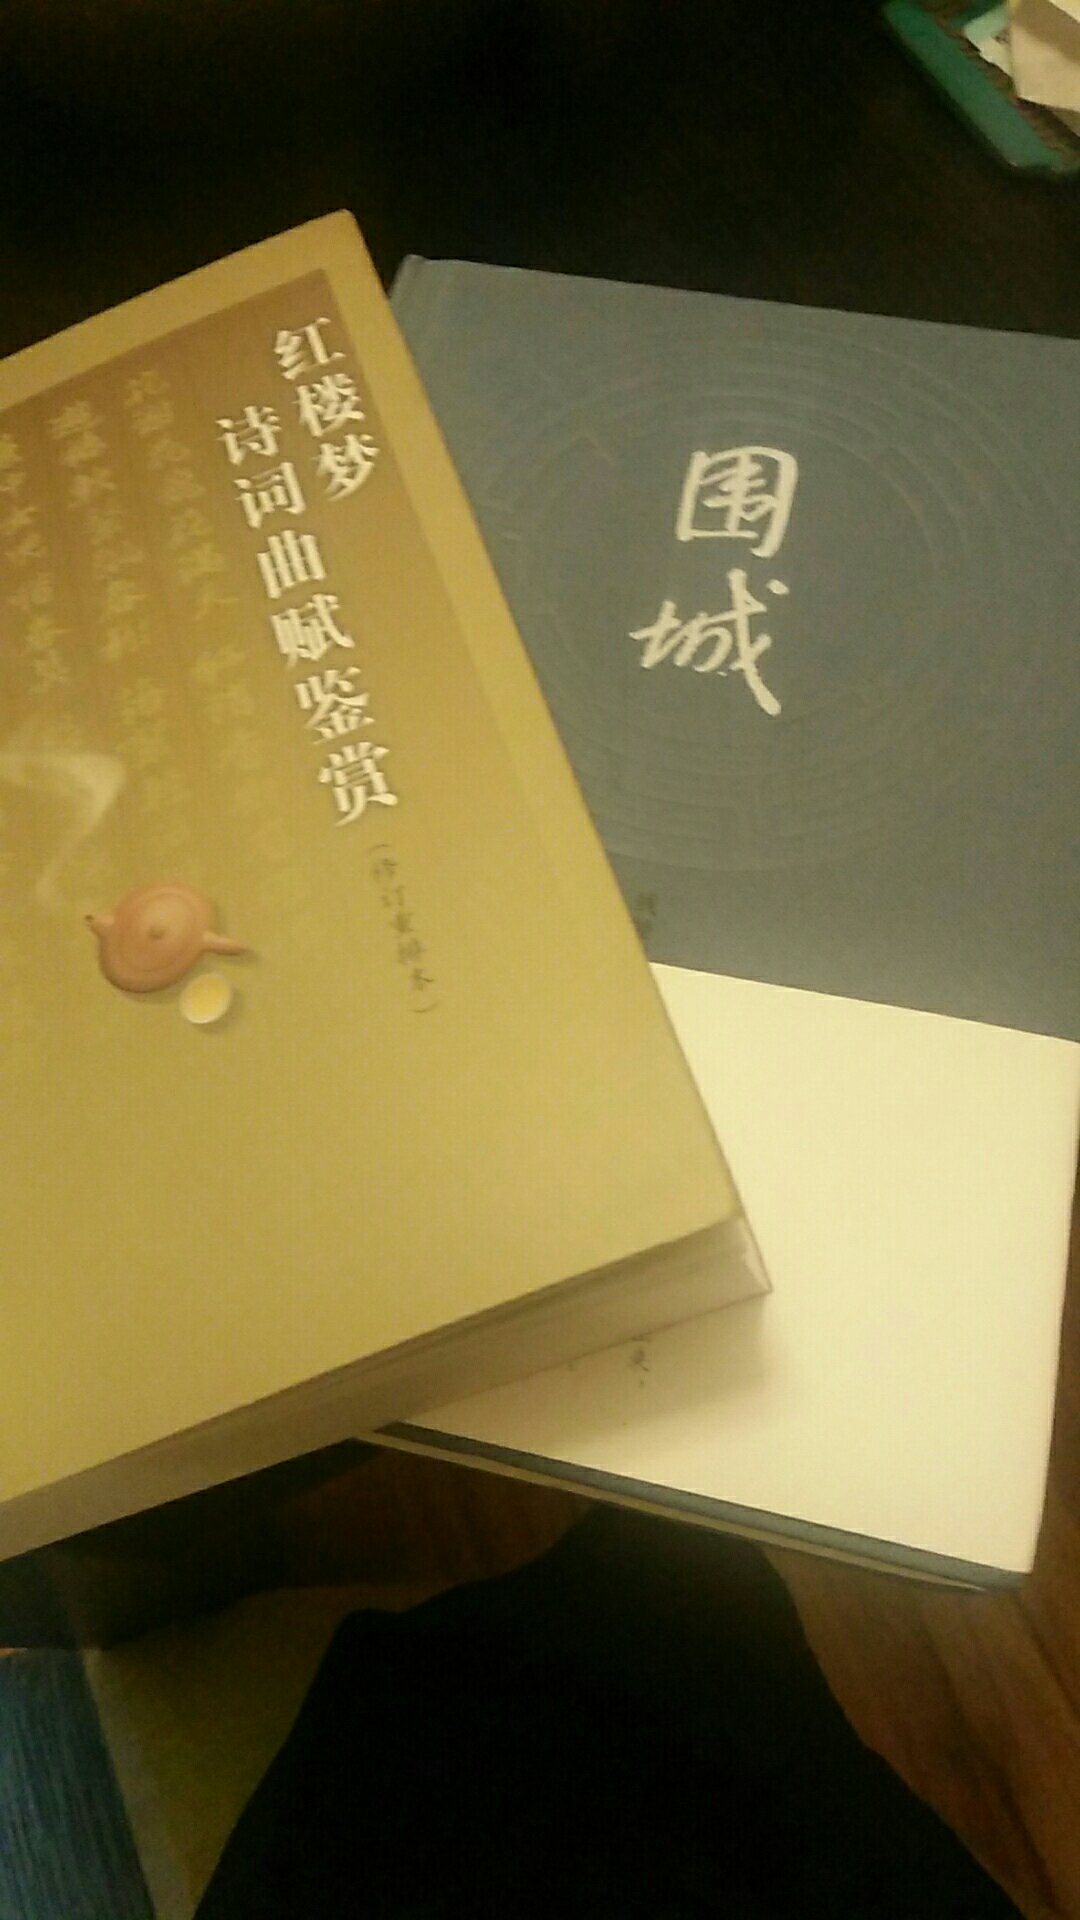 很棒啊，专业老师要求买的，很抢手很专业的书籍。中华书局出版O(∩_∩)O